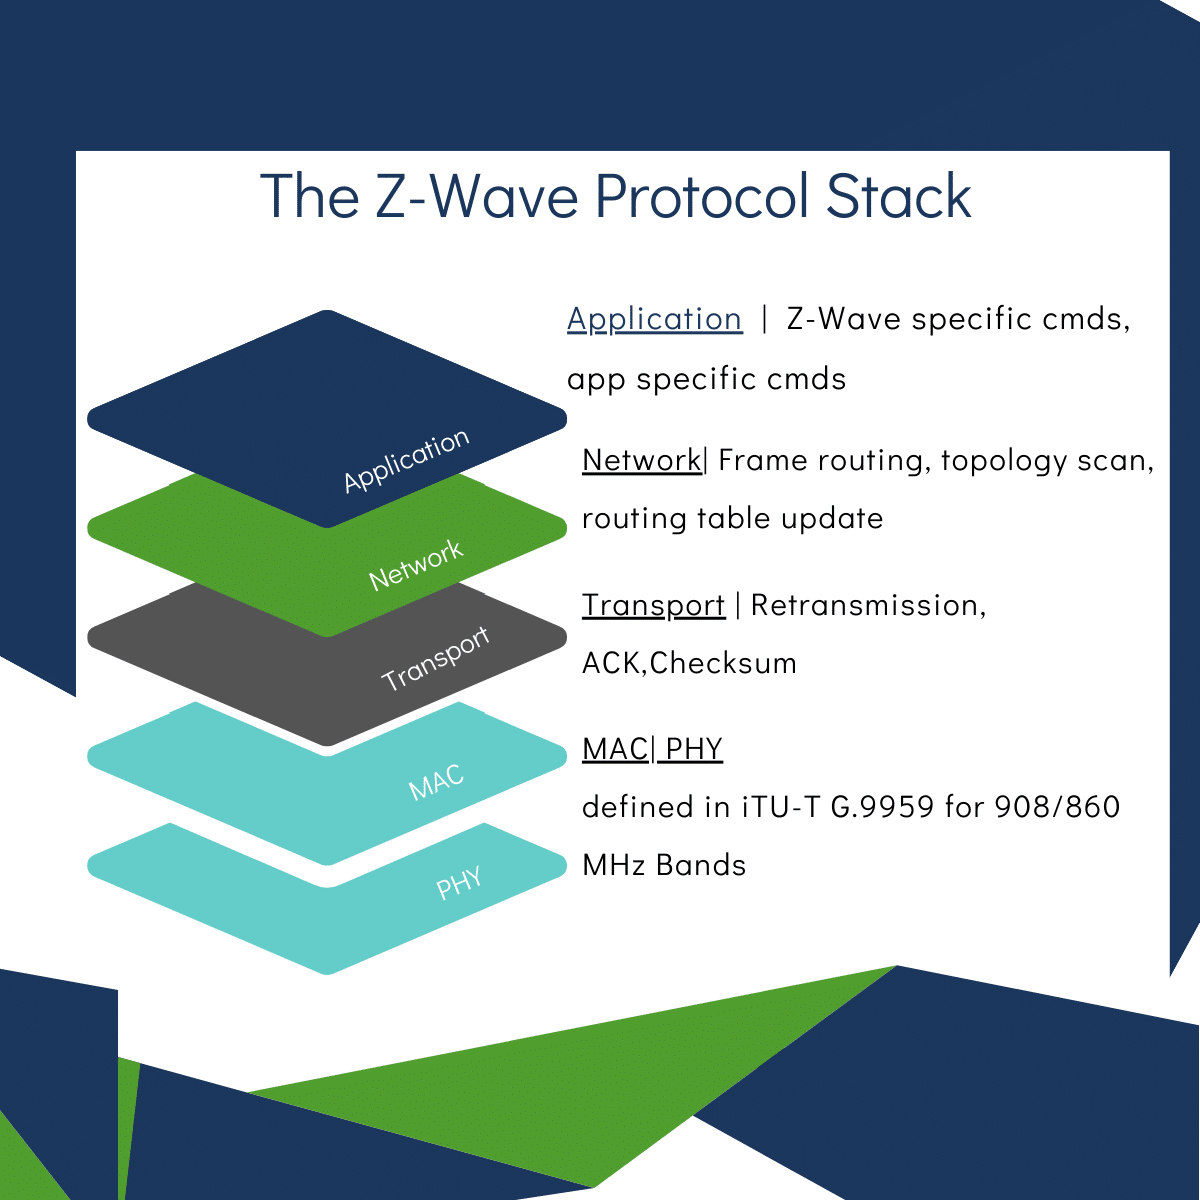 The Z-Wave Protocol Stack